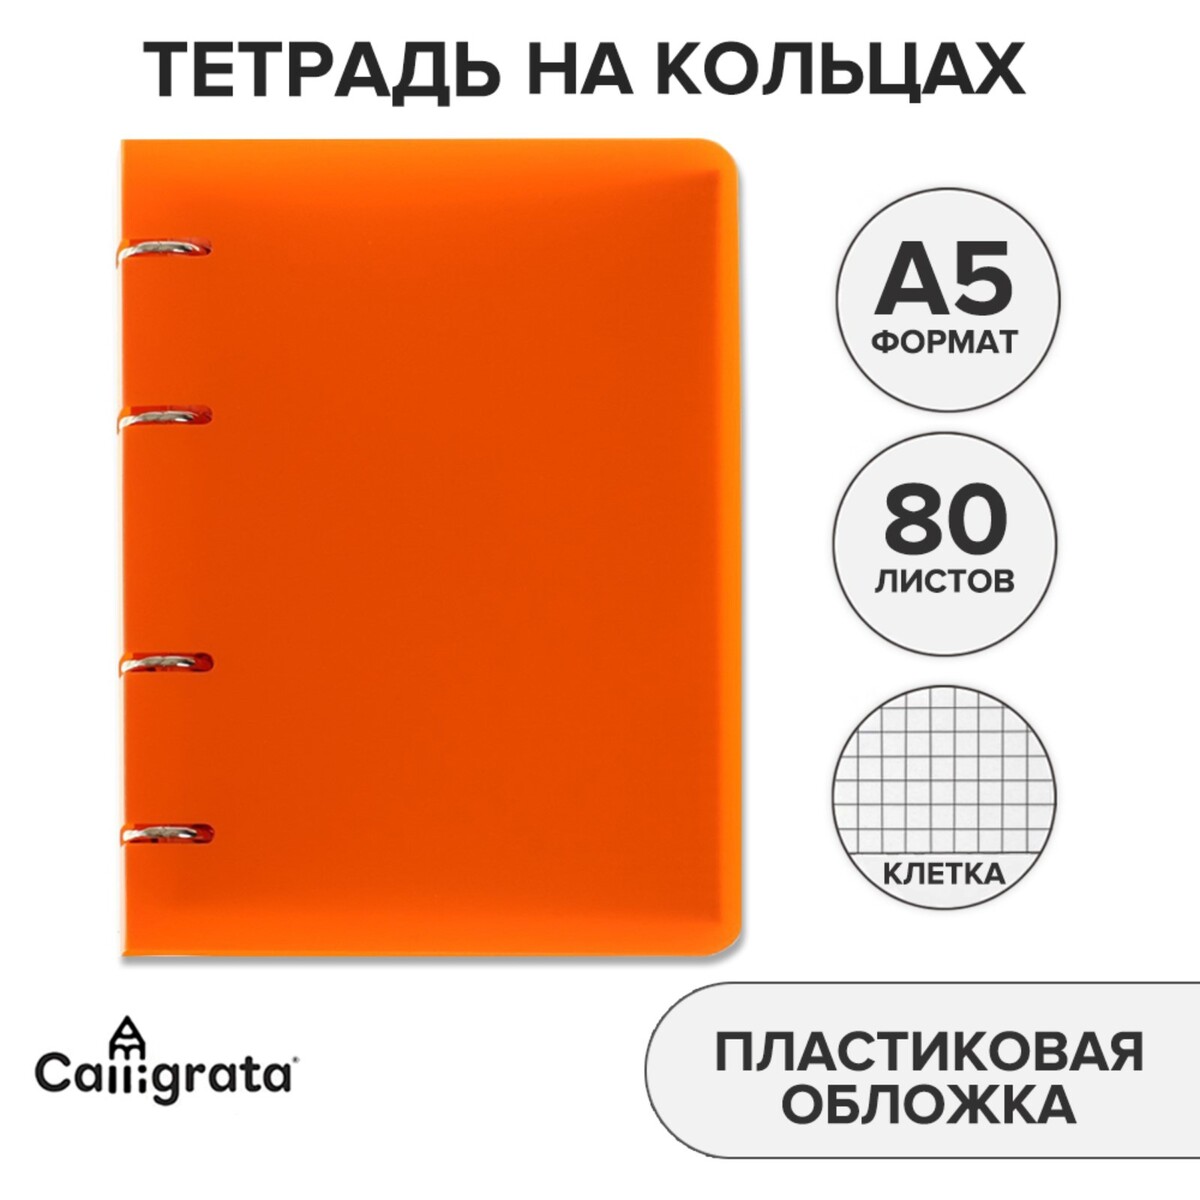 Тетрадь на кольцах a5 80 листов в клетку calligrata оранжевая, пластиковая обложка, блок офсет